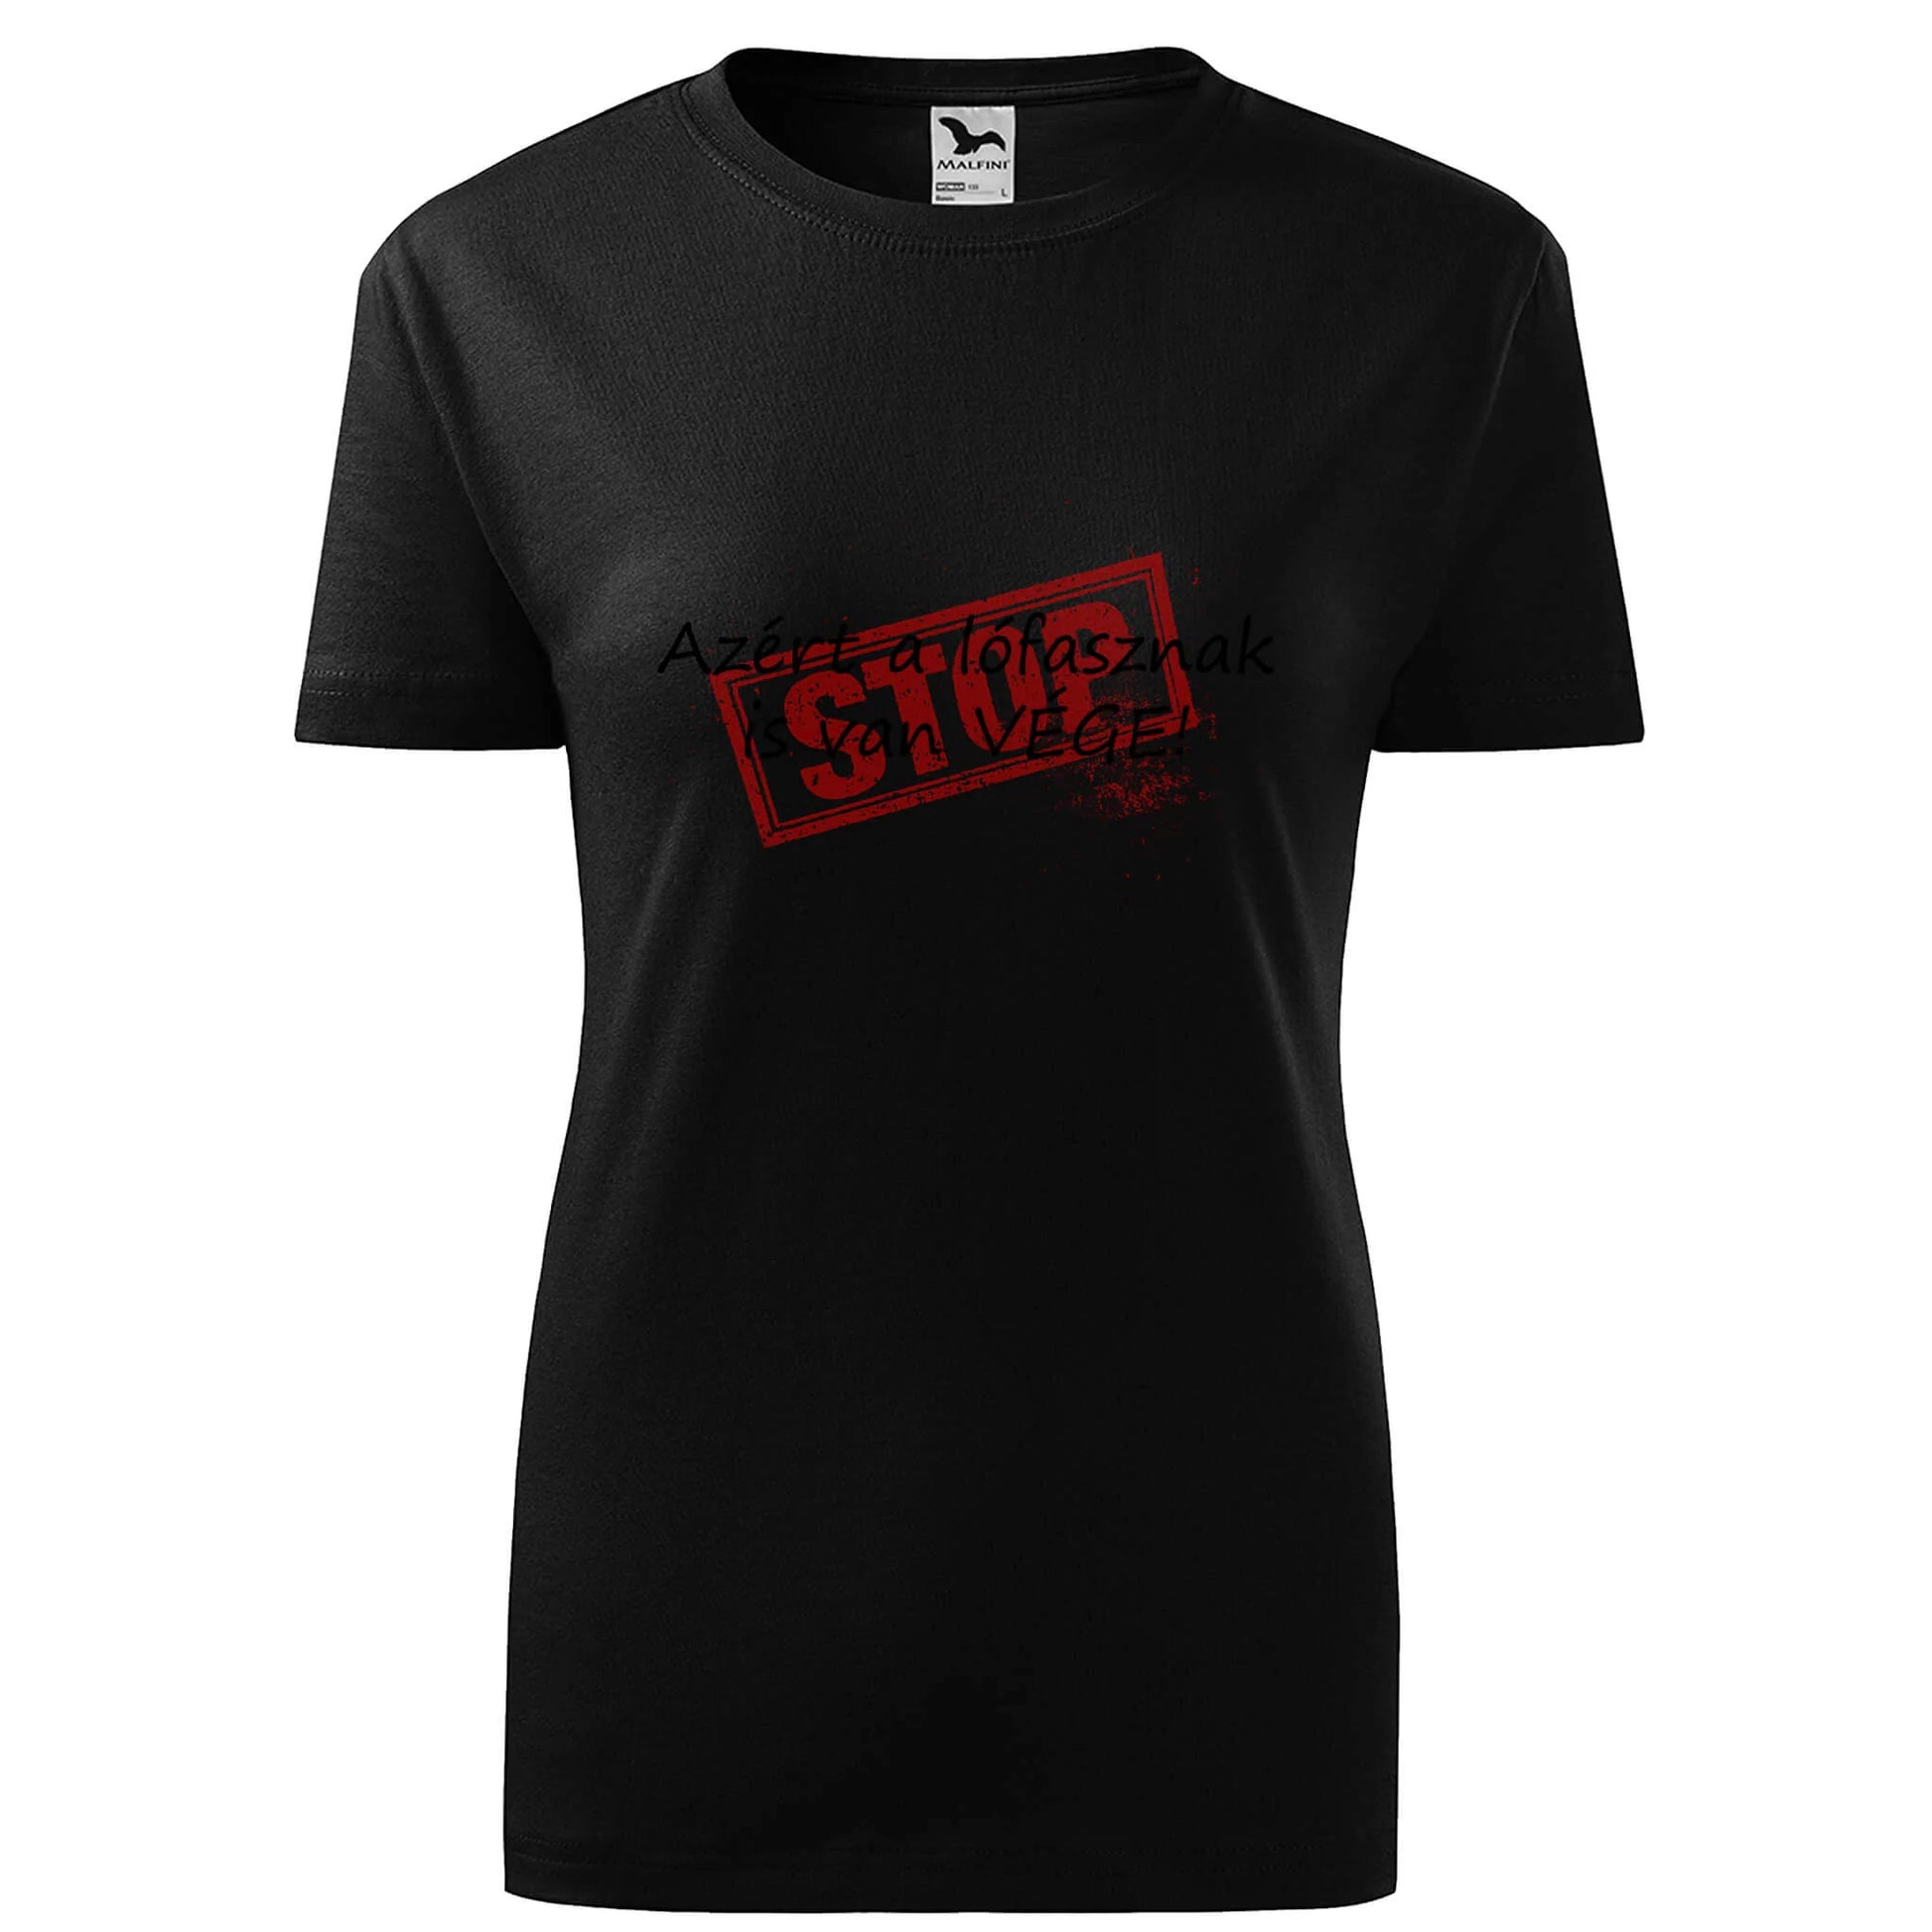 Stop lofasznak is van vege t-shirt - rvdesignprint